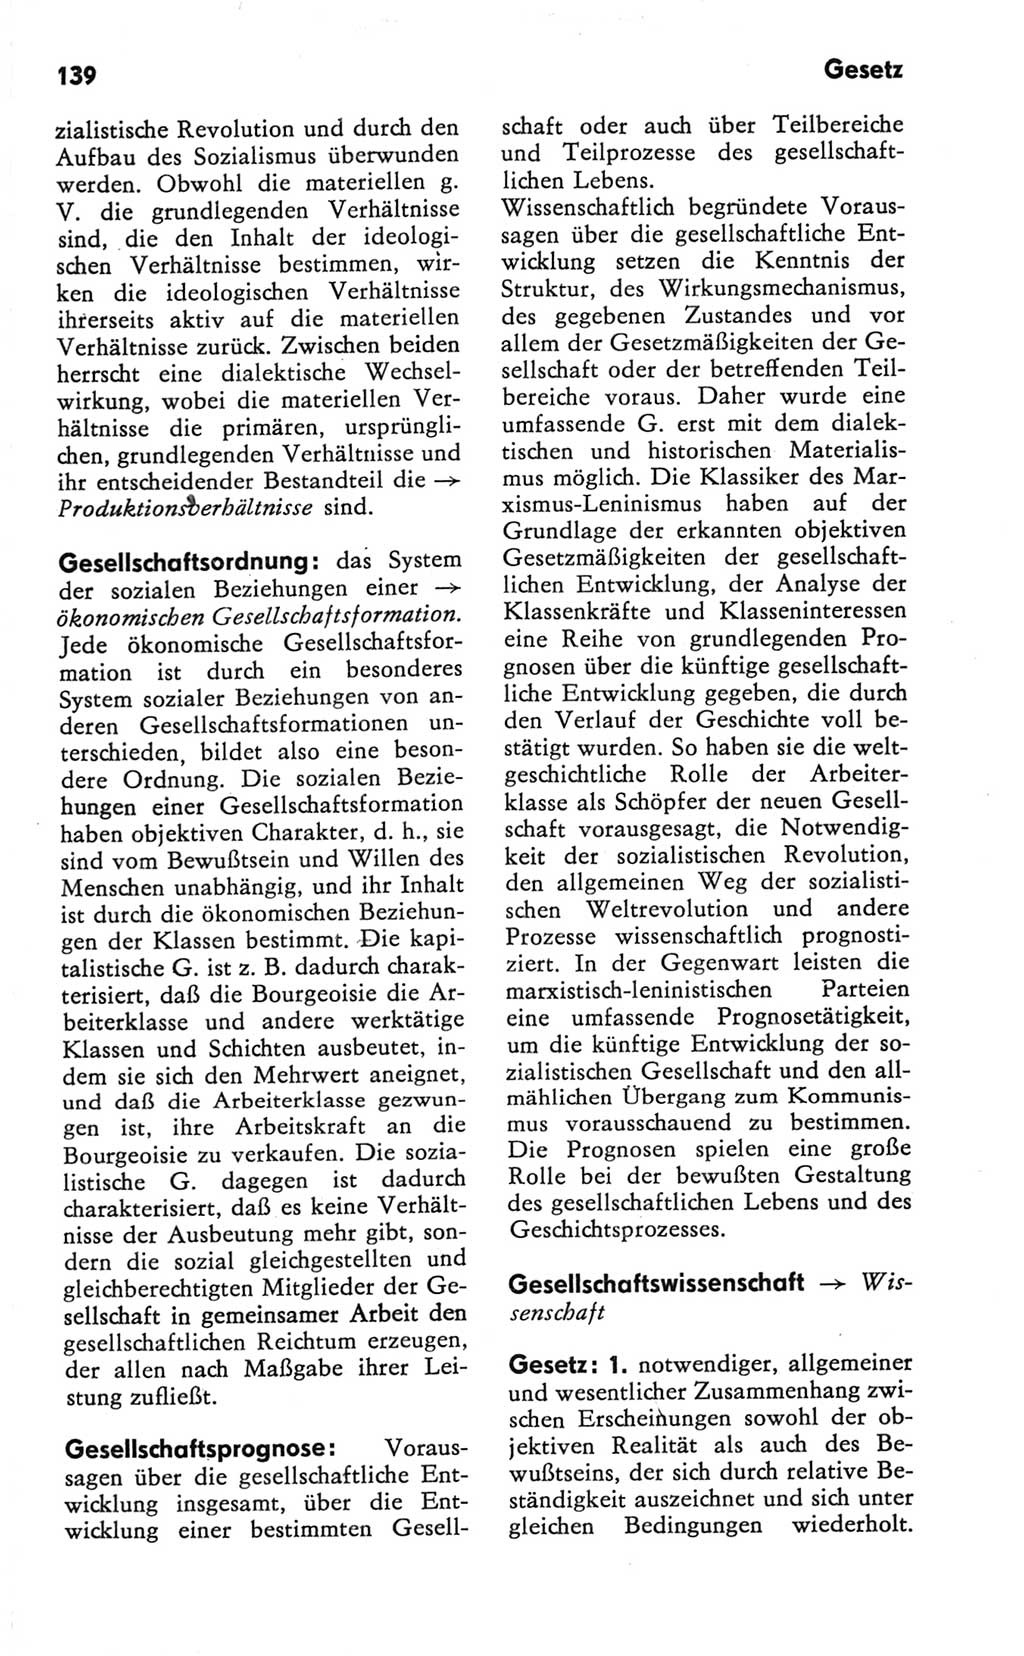 Kleines Wörterbuch der marxistisch-leninistischen Philosophie [Deutsche Demokratische Republik (DDR)] 1981, Seite 139 (Kl. Wb. ML Phil. DDR 1981, S. 139)